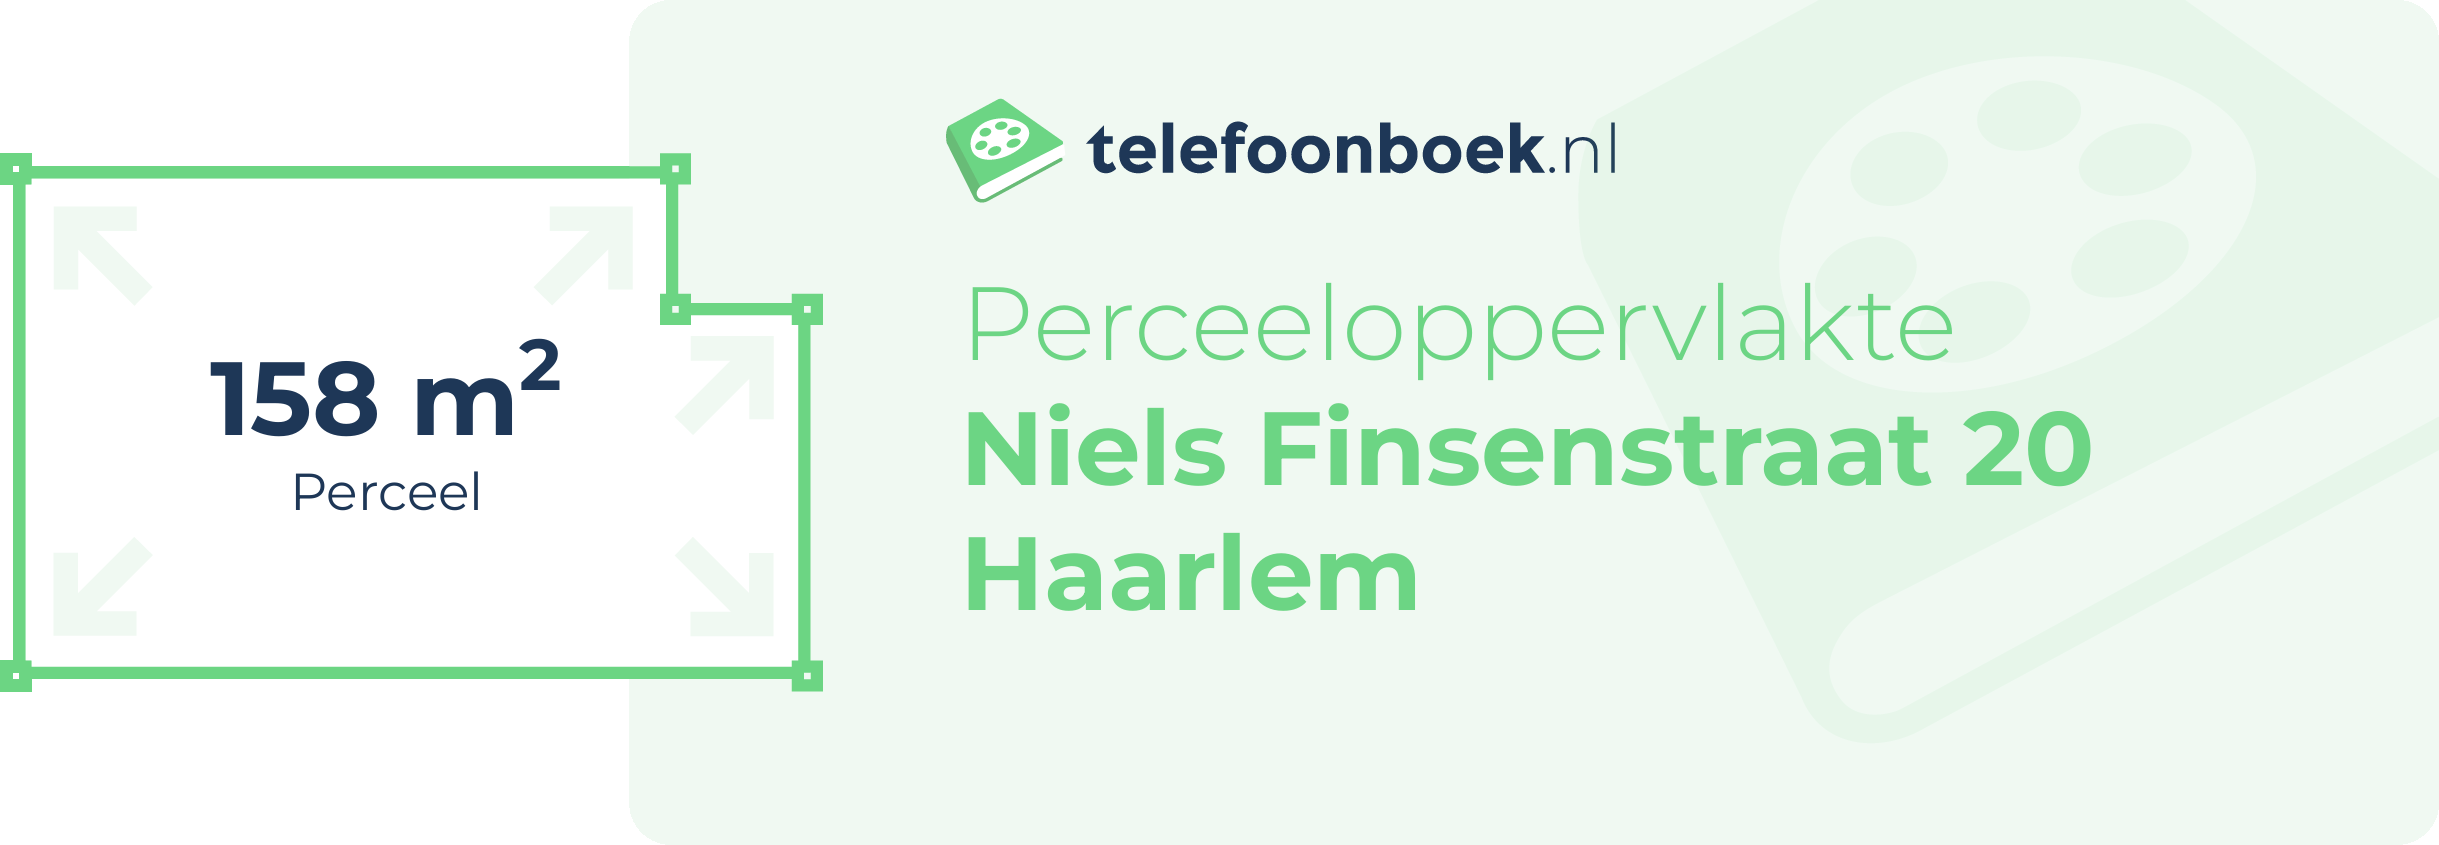 Perceeloppervlakte Niels Finsenstraat 20 Haarlem